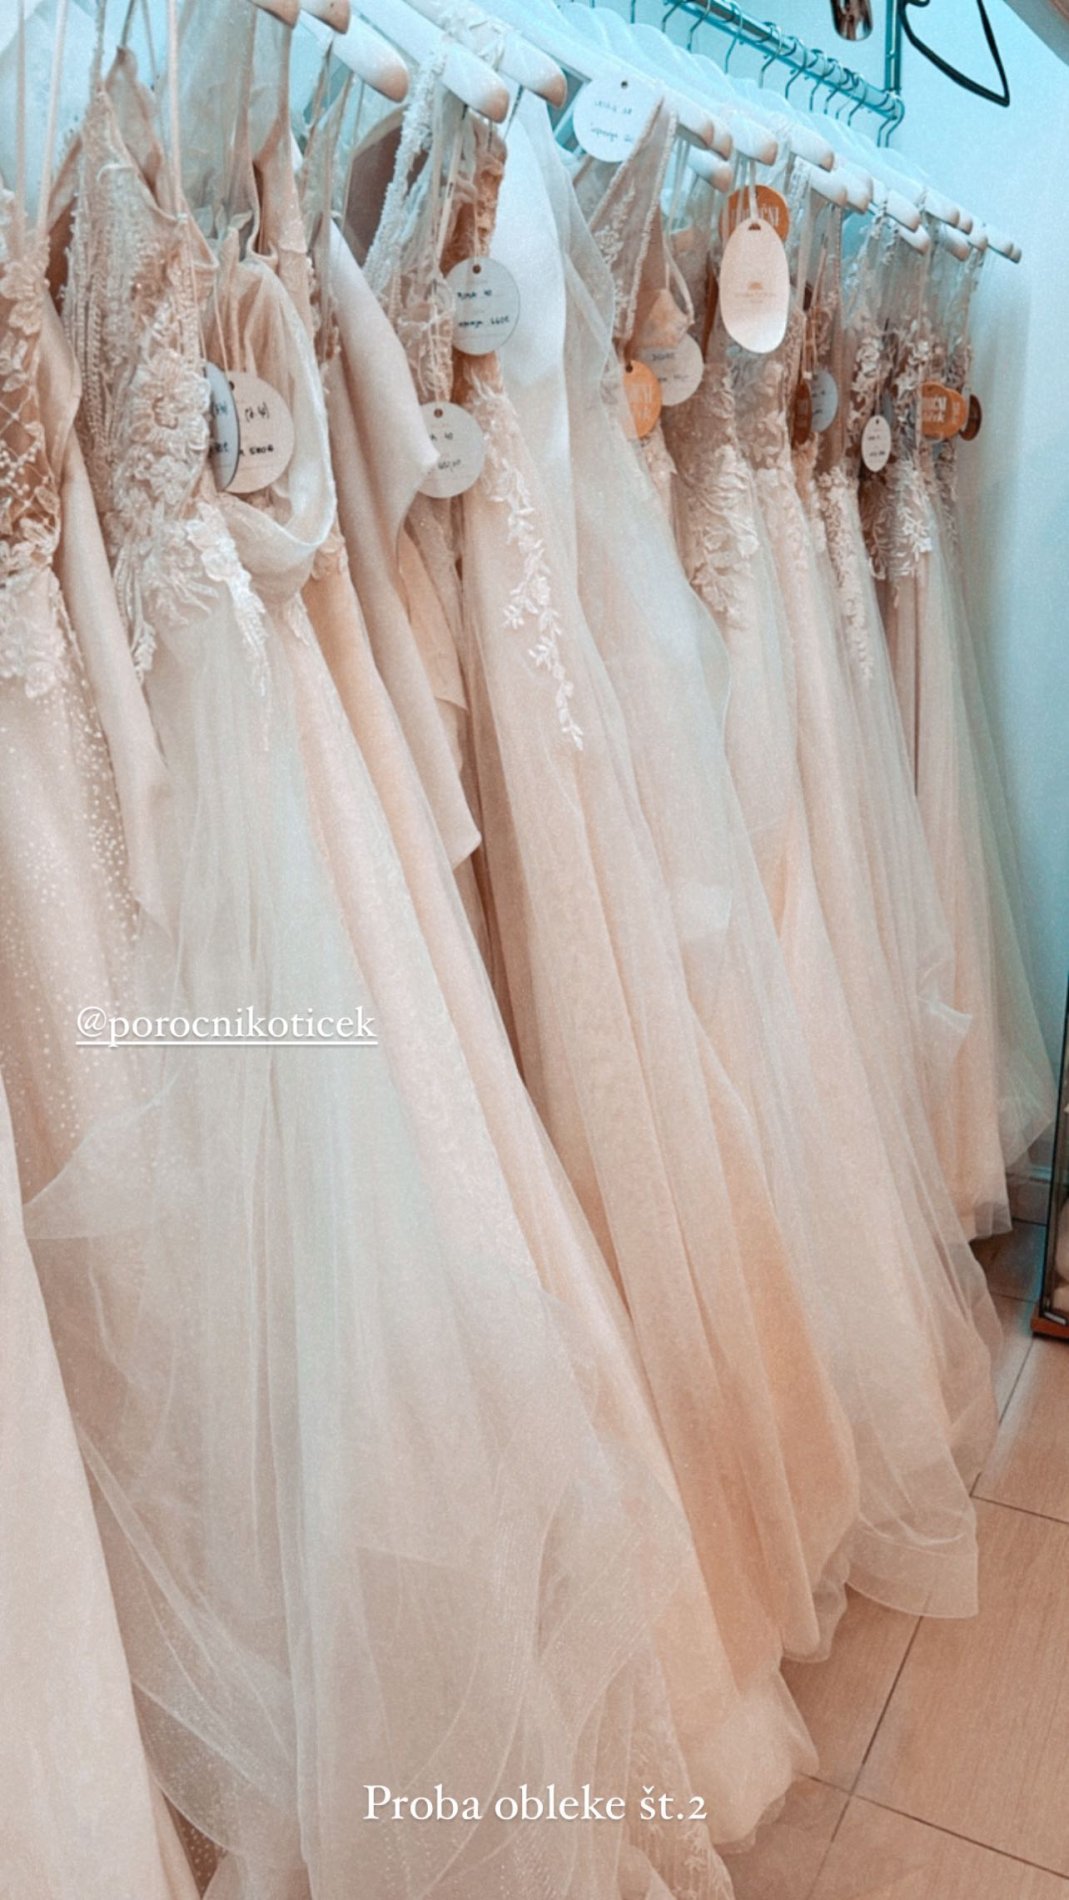 Manca pomerja obleke v poročnem salonu. Vir: Instagram